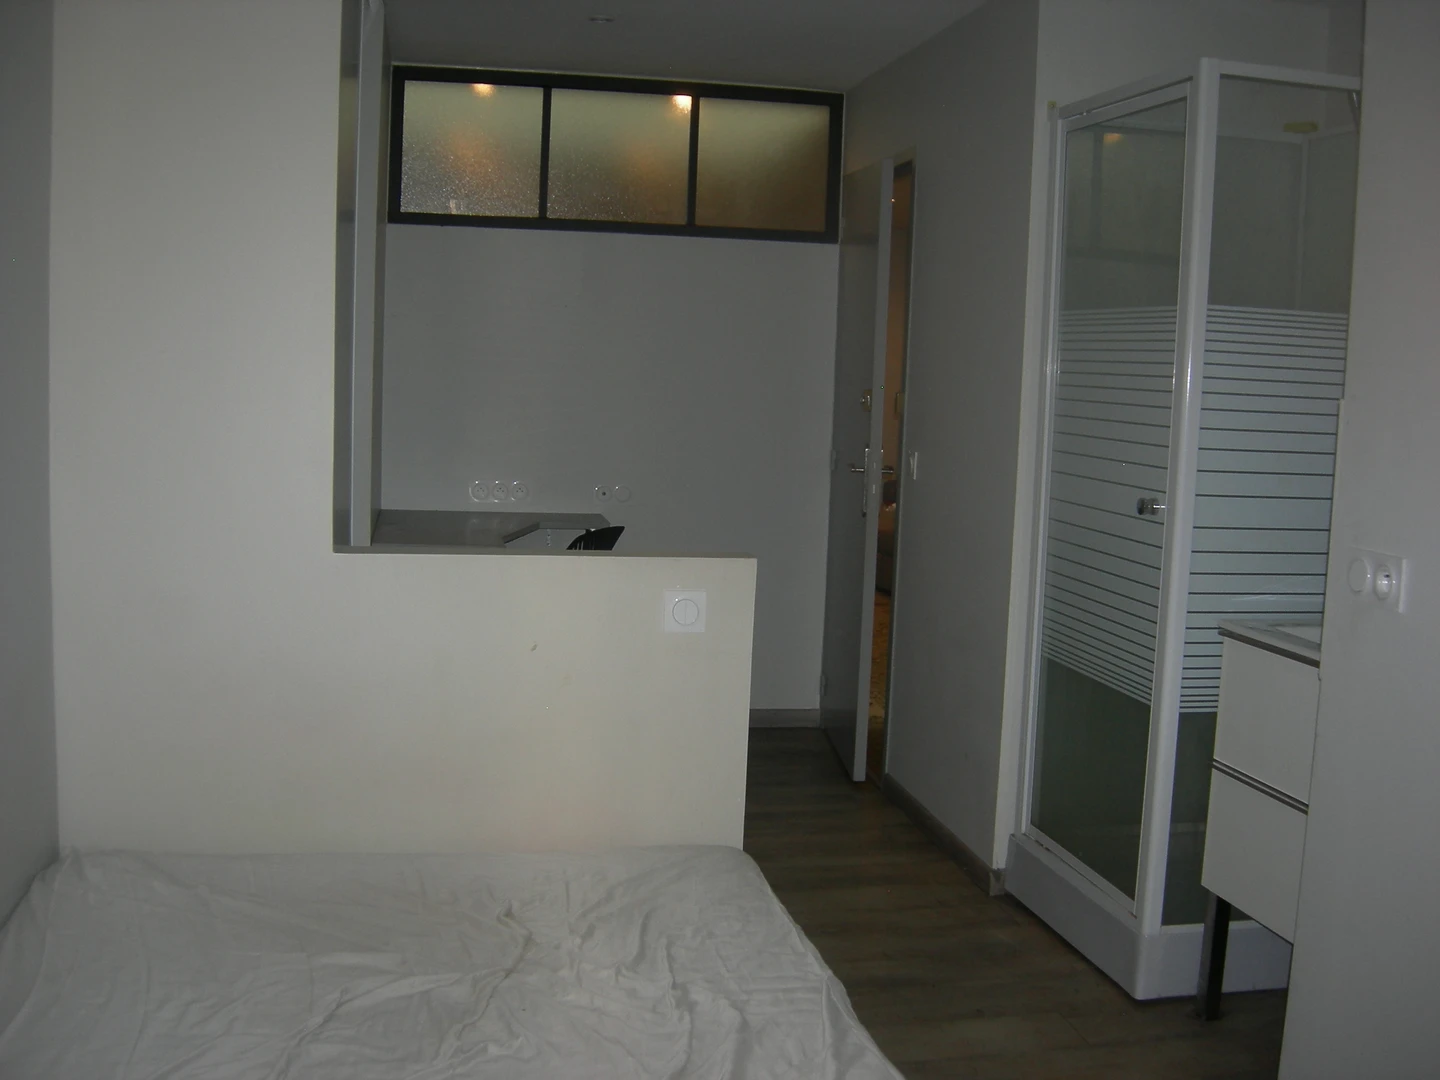 Perpignan de ortak bir dairede kiralık oda